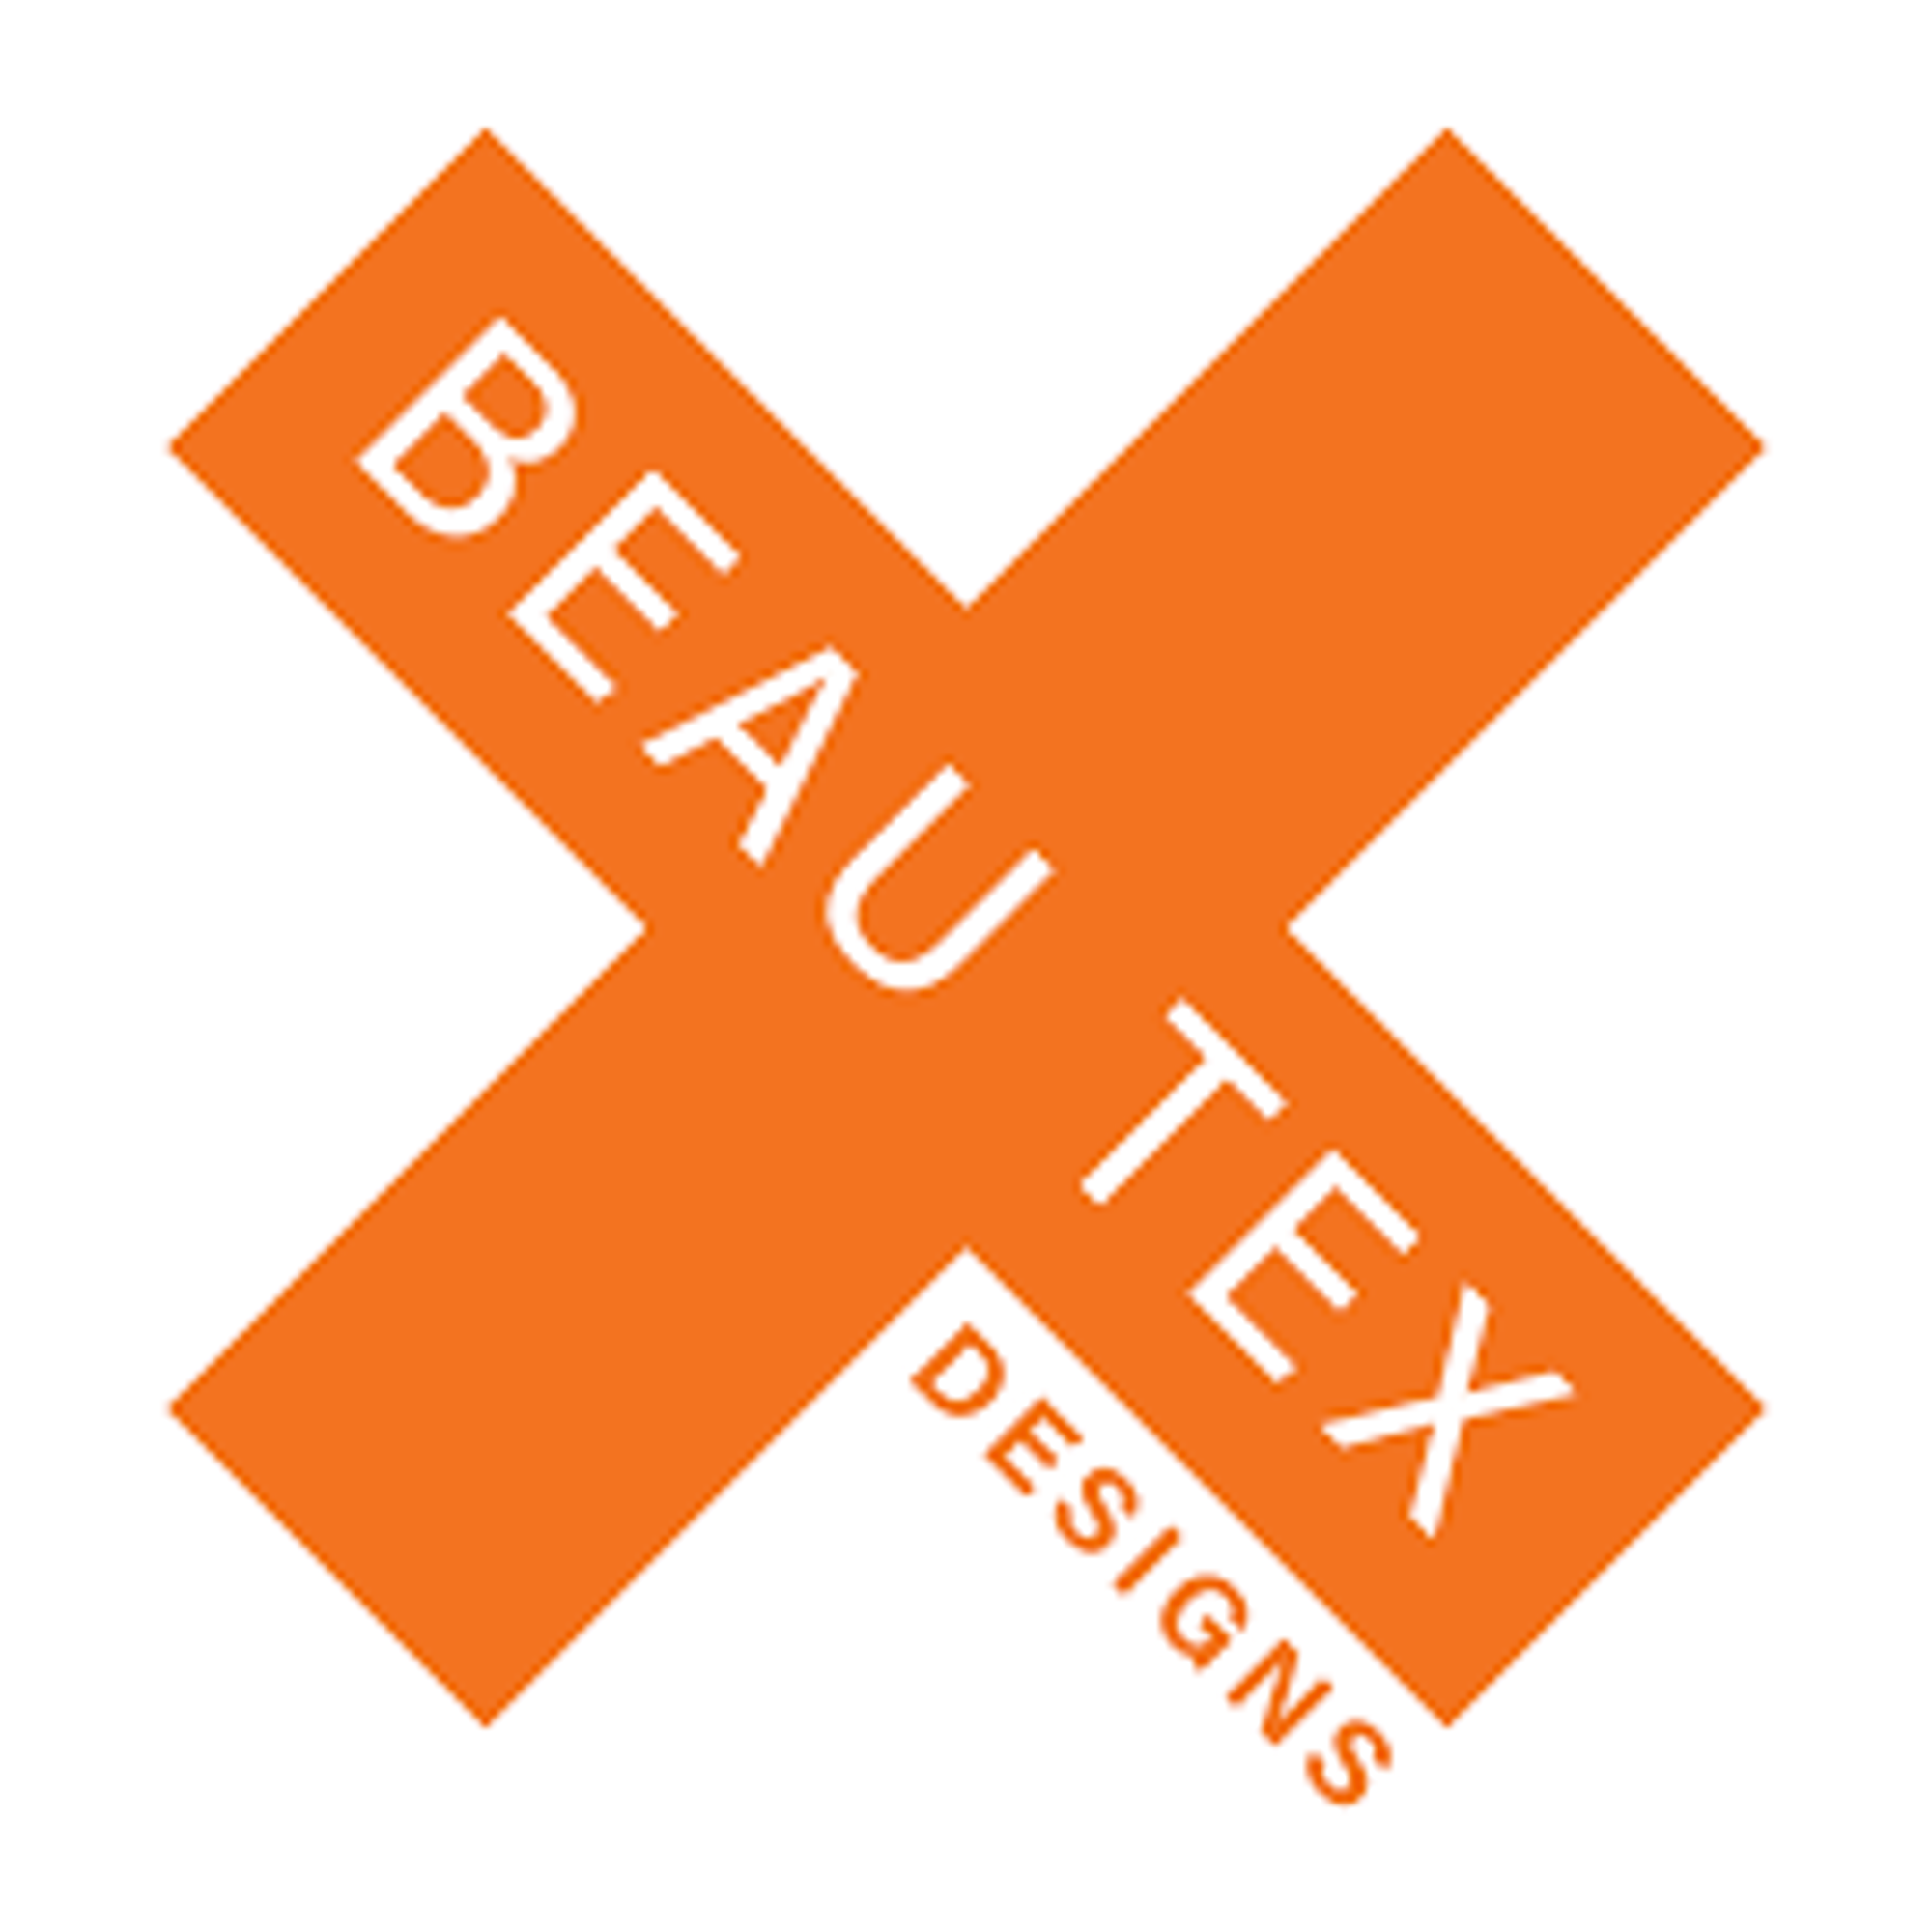 BeauTex Designs